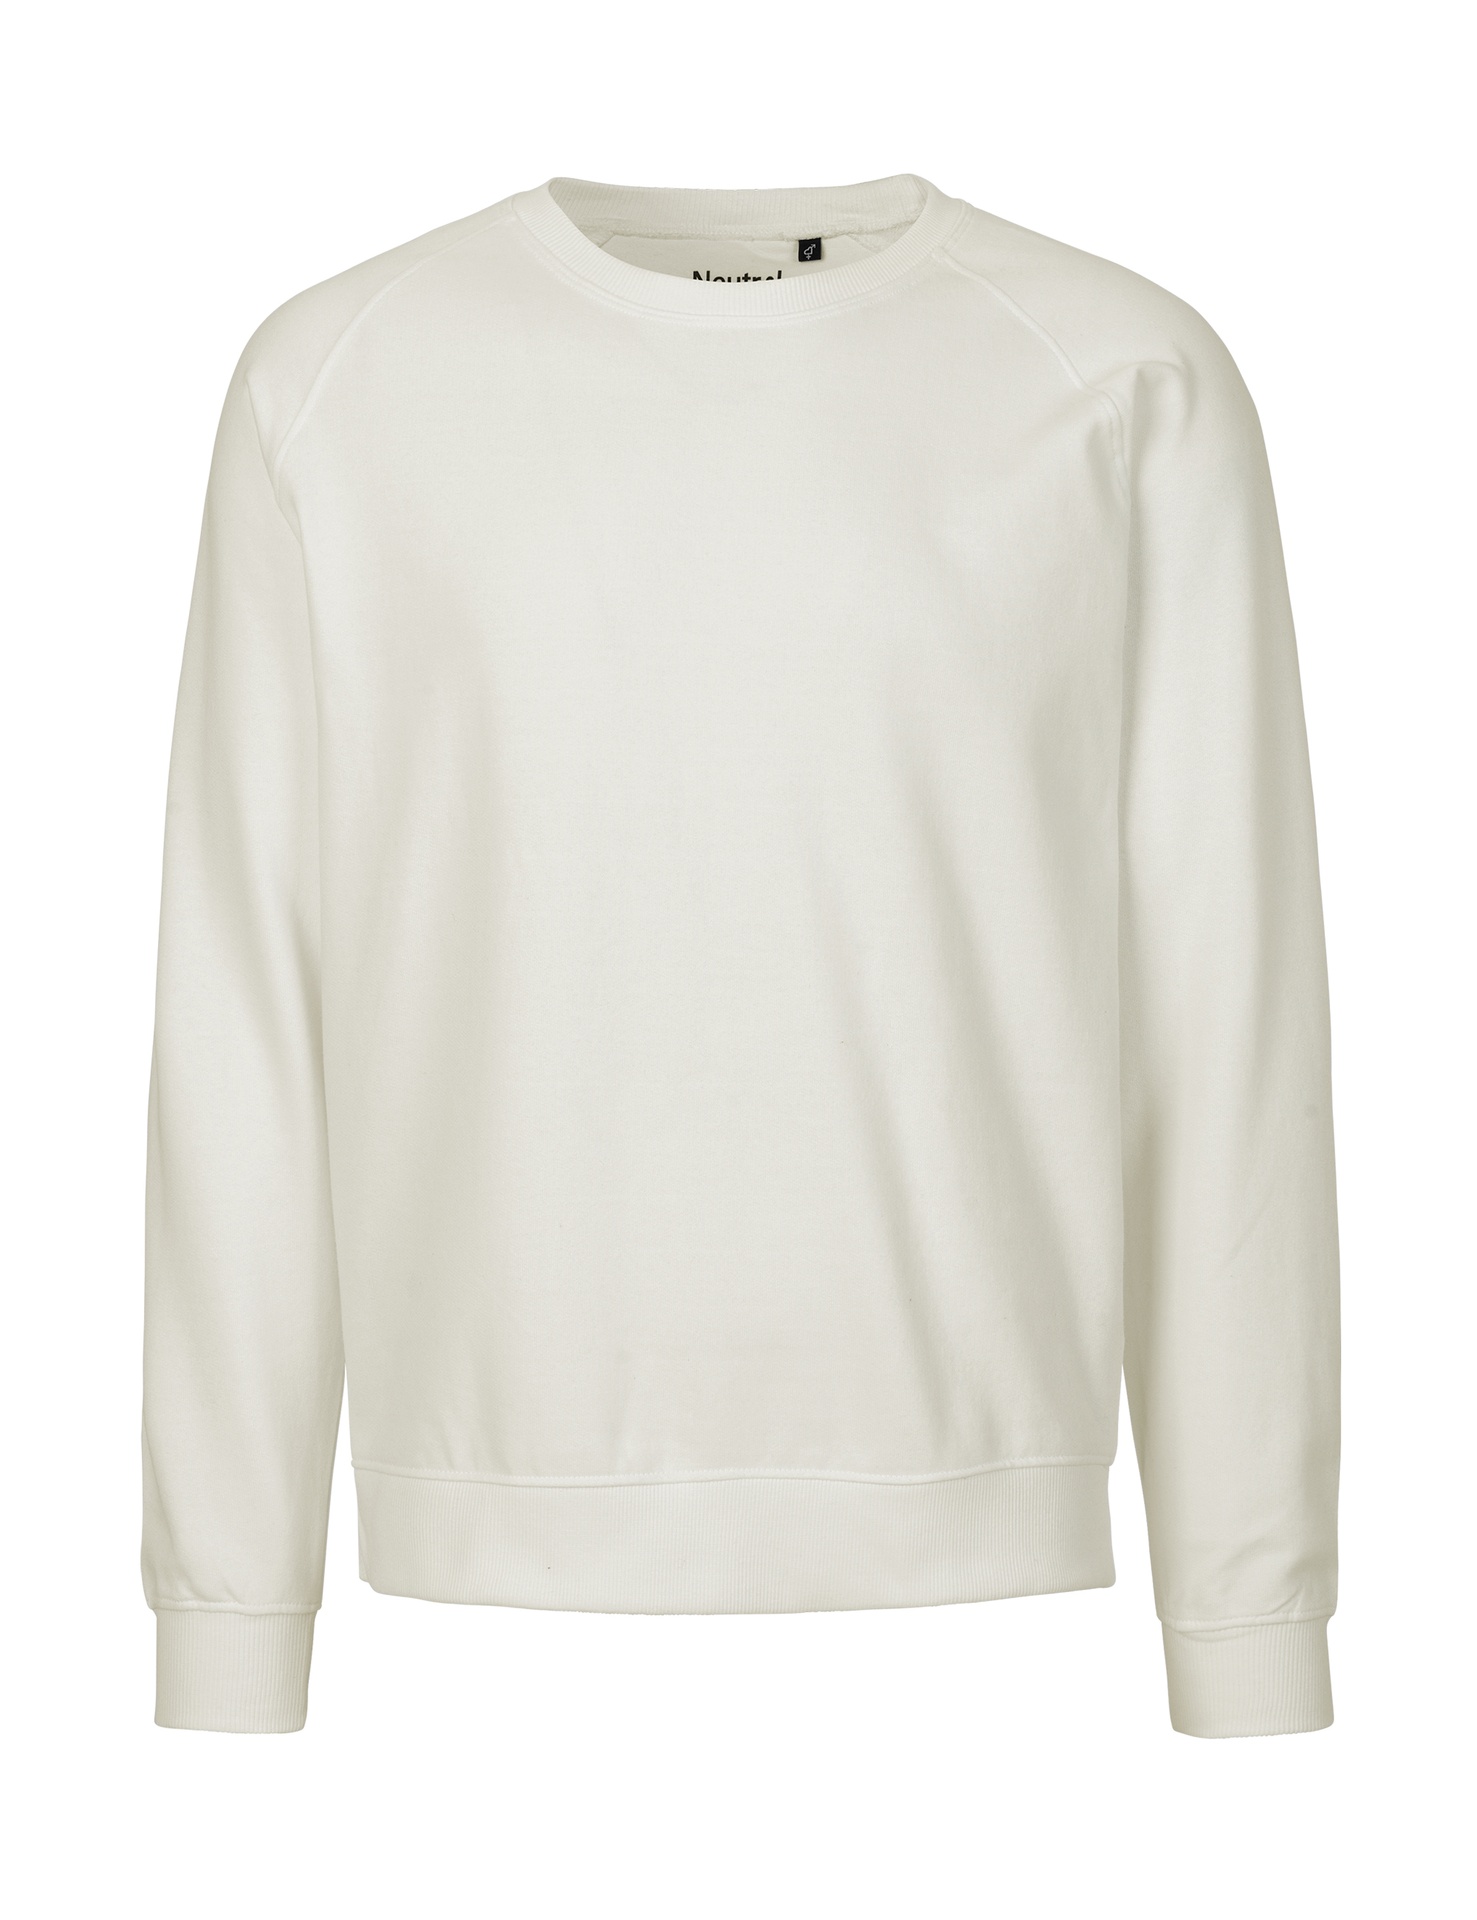 [PR/02648] Unisex Sweatshirt (Nature 00, 2XL)